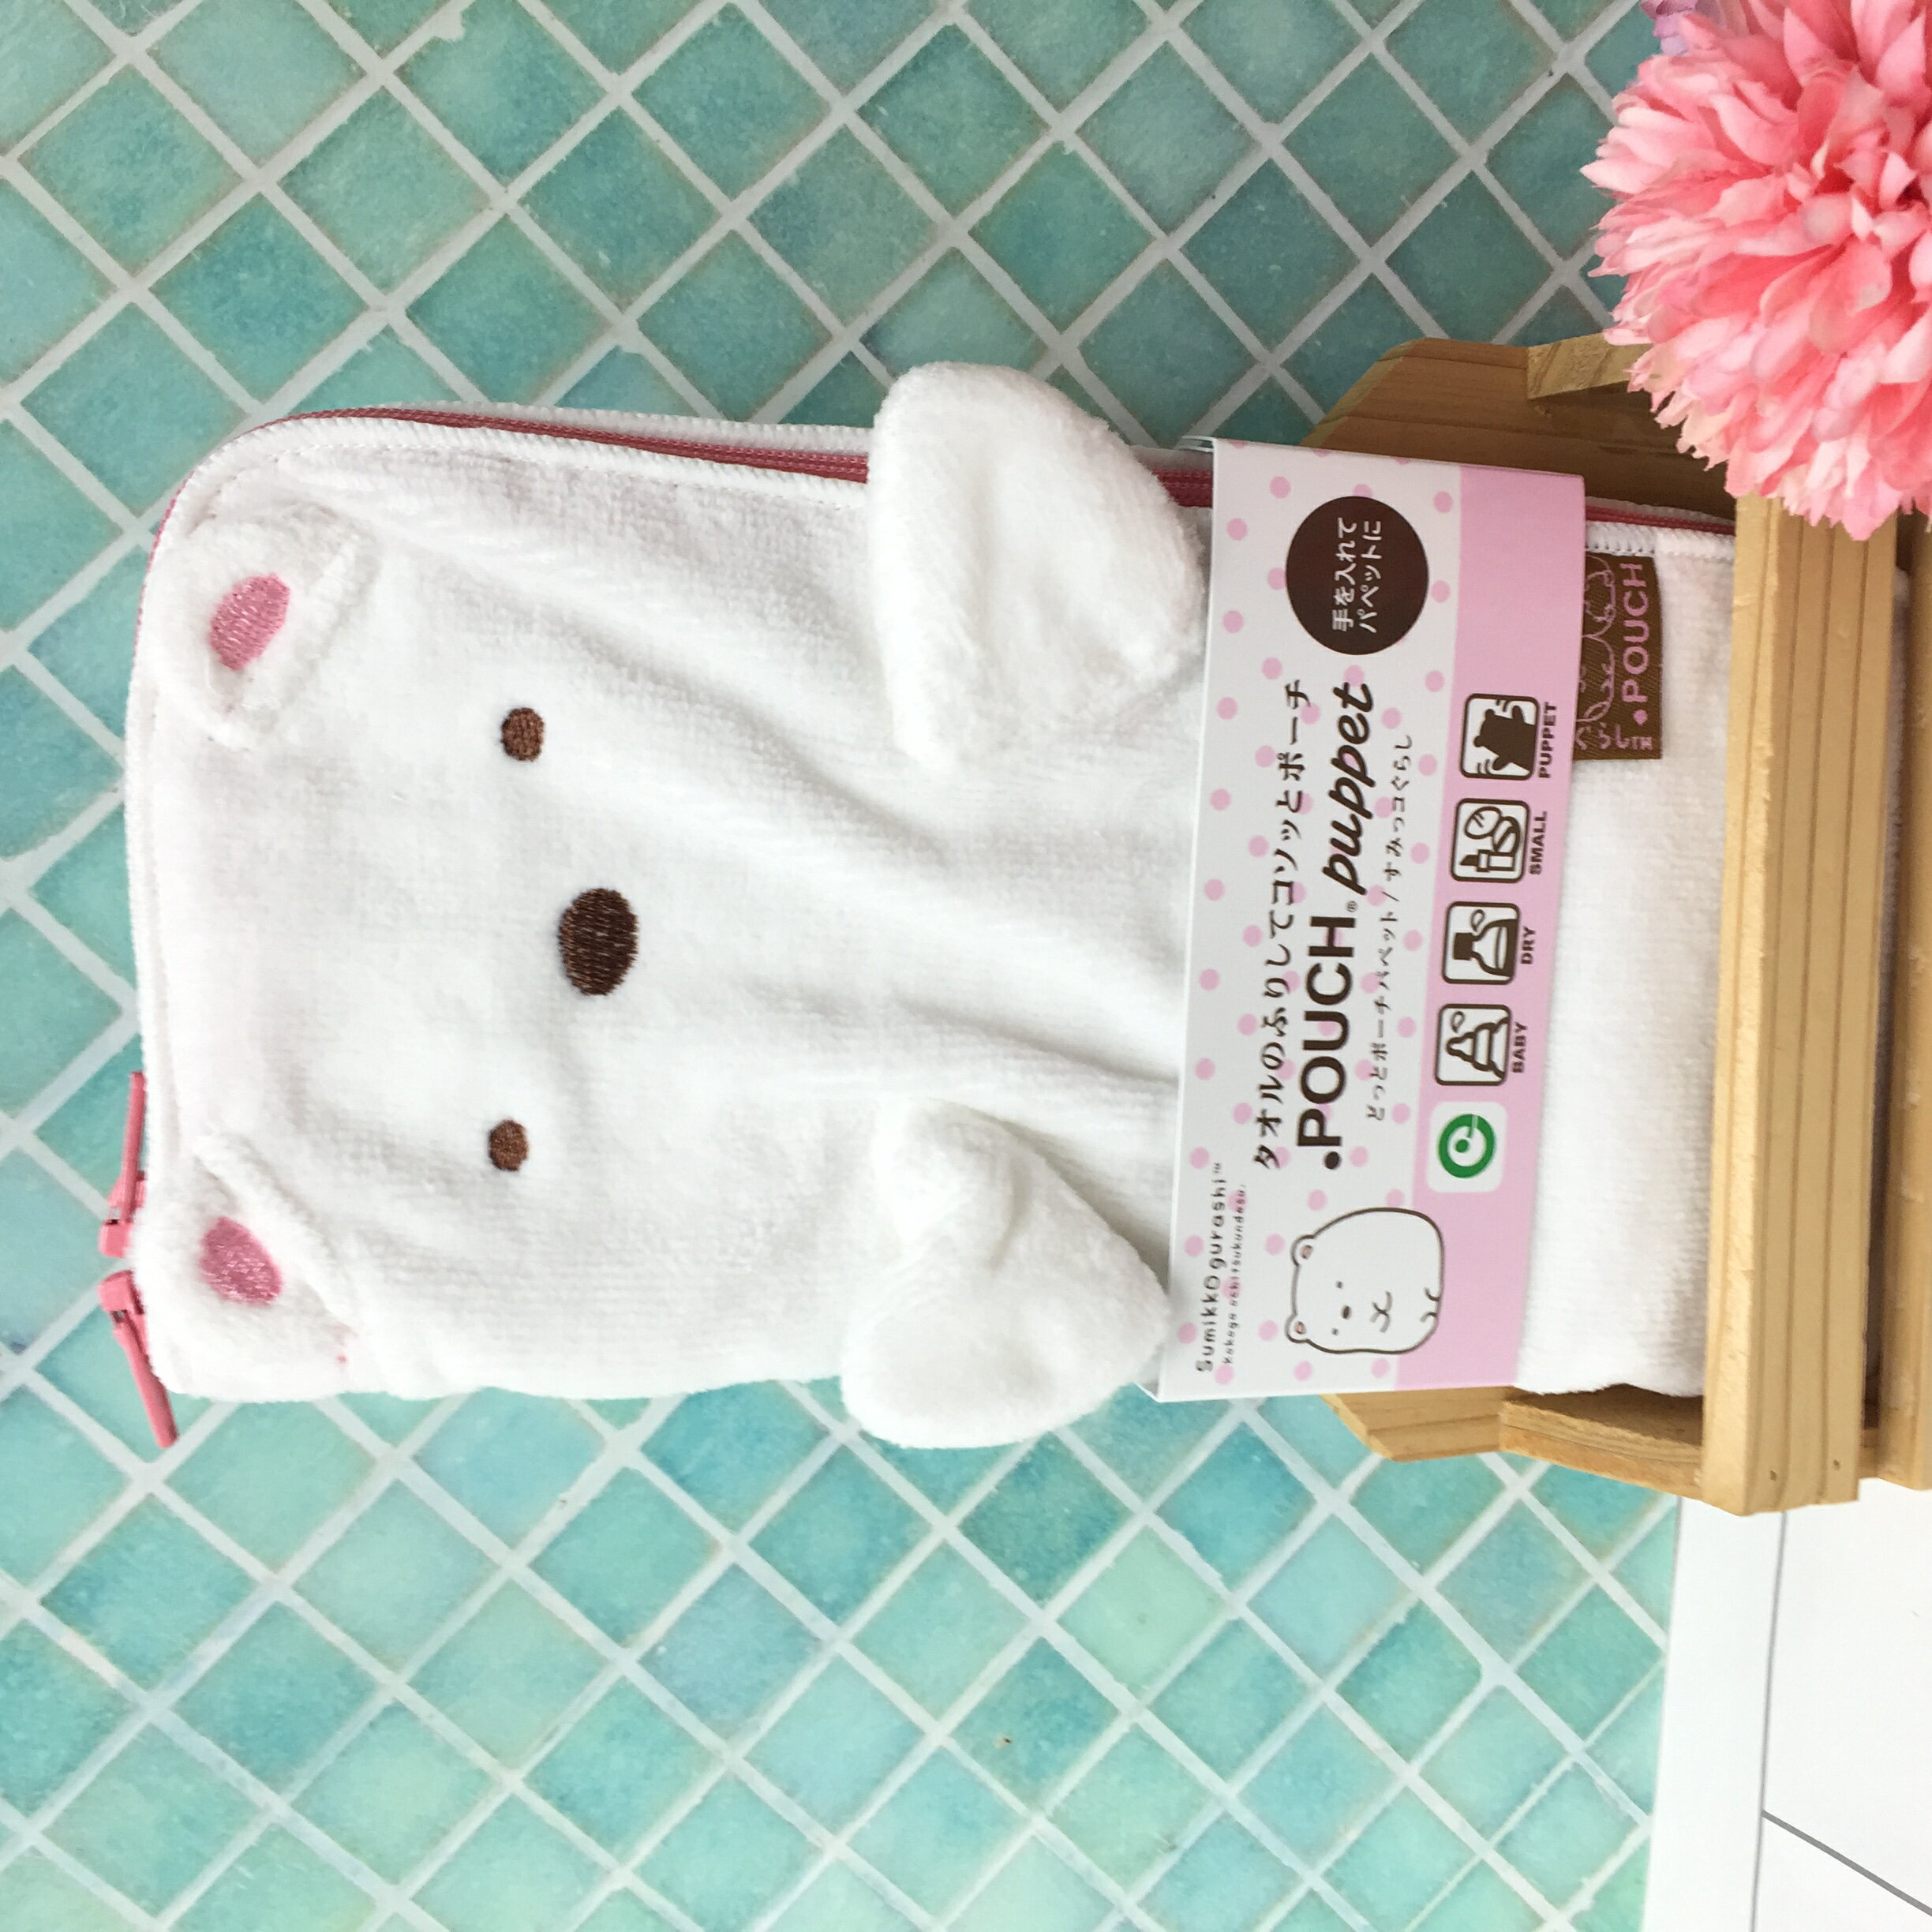 毛巾袋 SAN-X 角落生物 白熊 拉鍊收納袋 日本進口正版授權